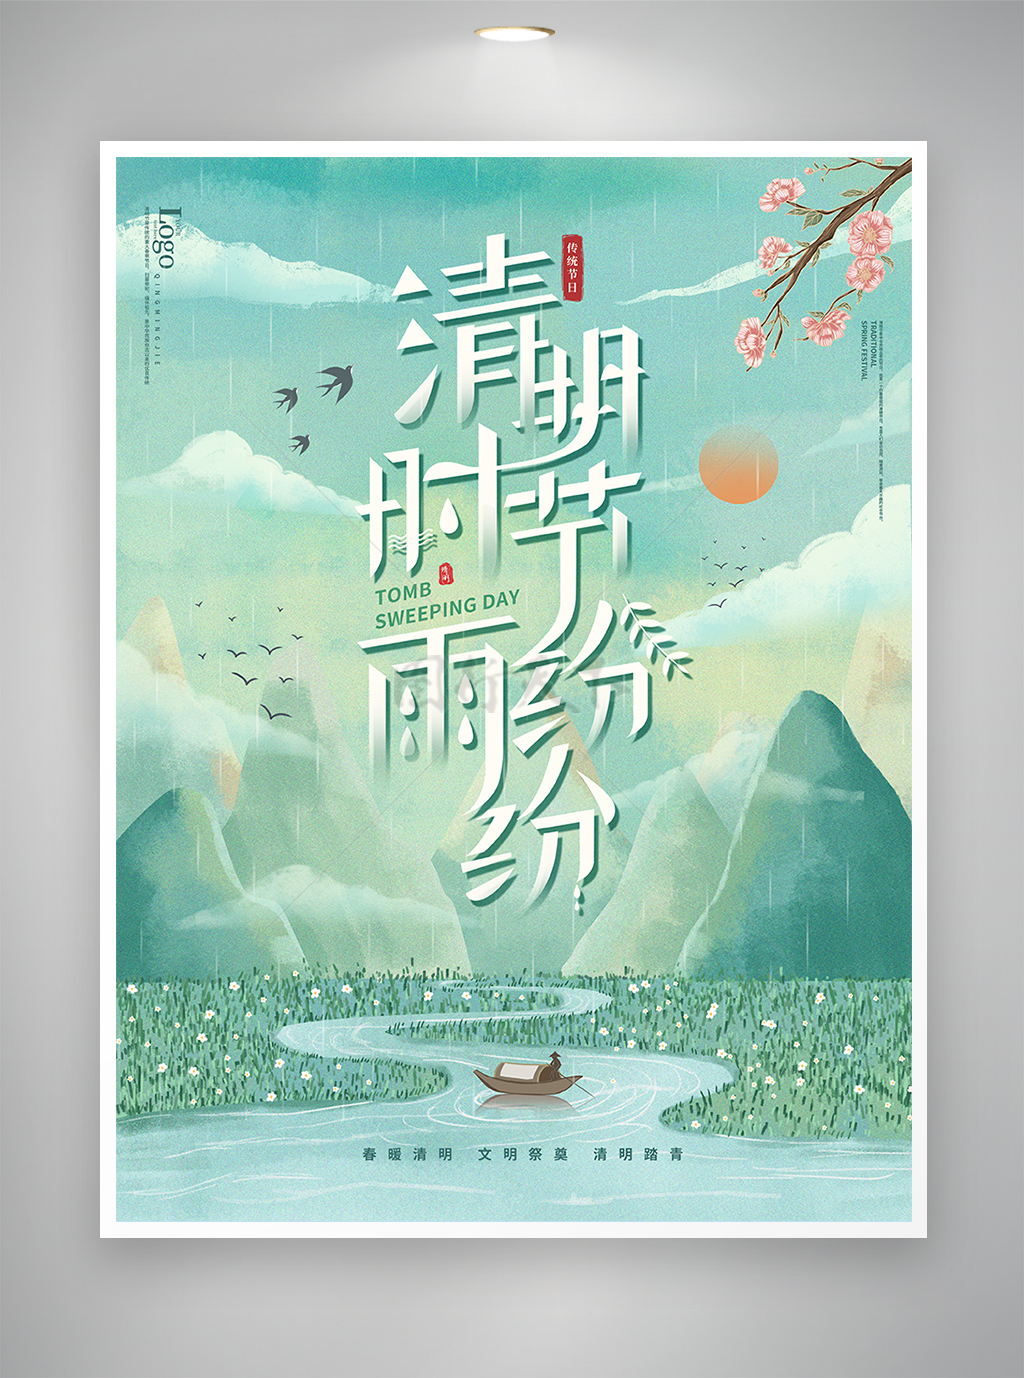 清明节节日宣传清新手绘风海报